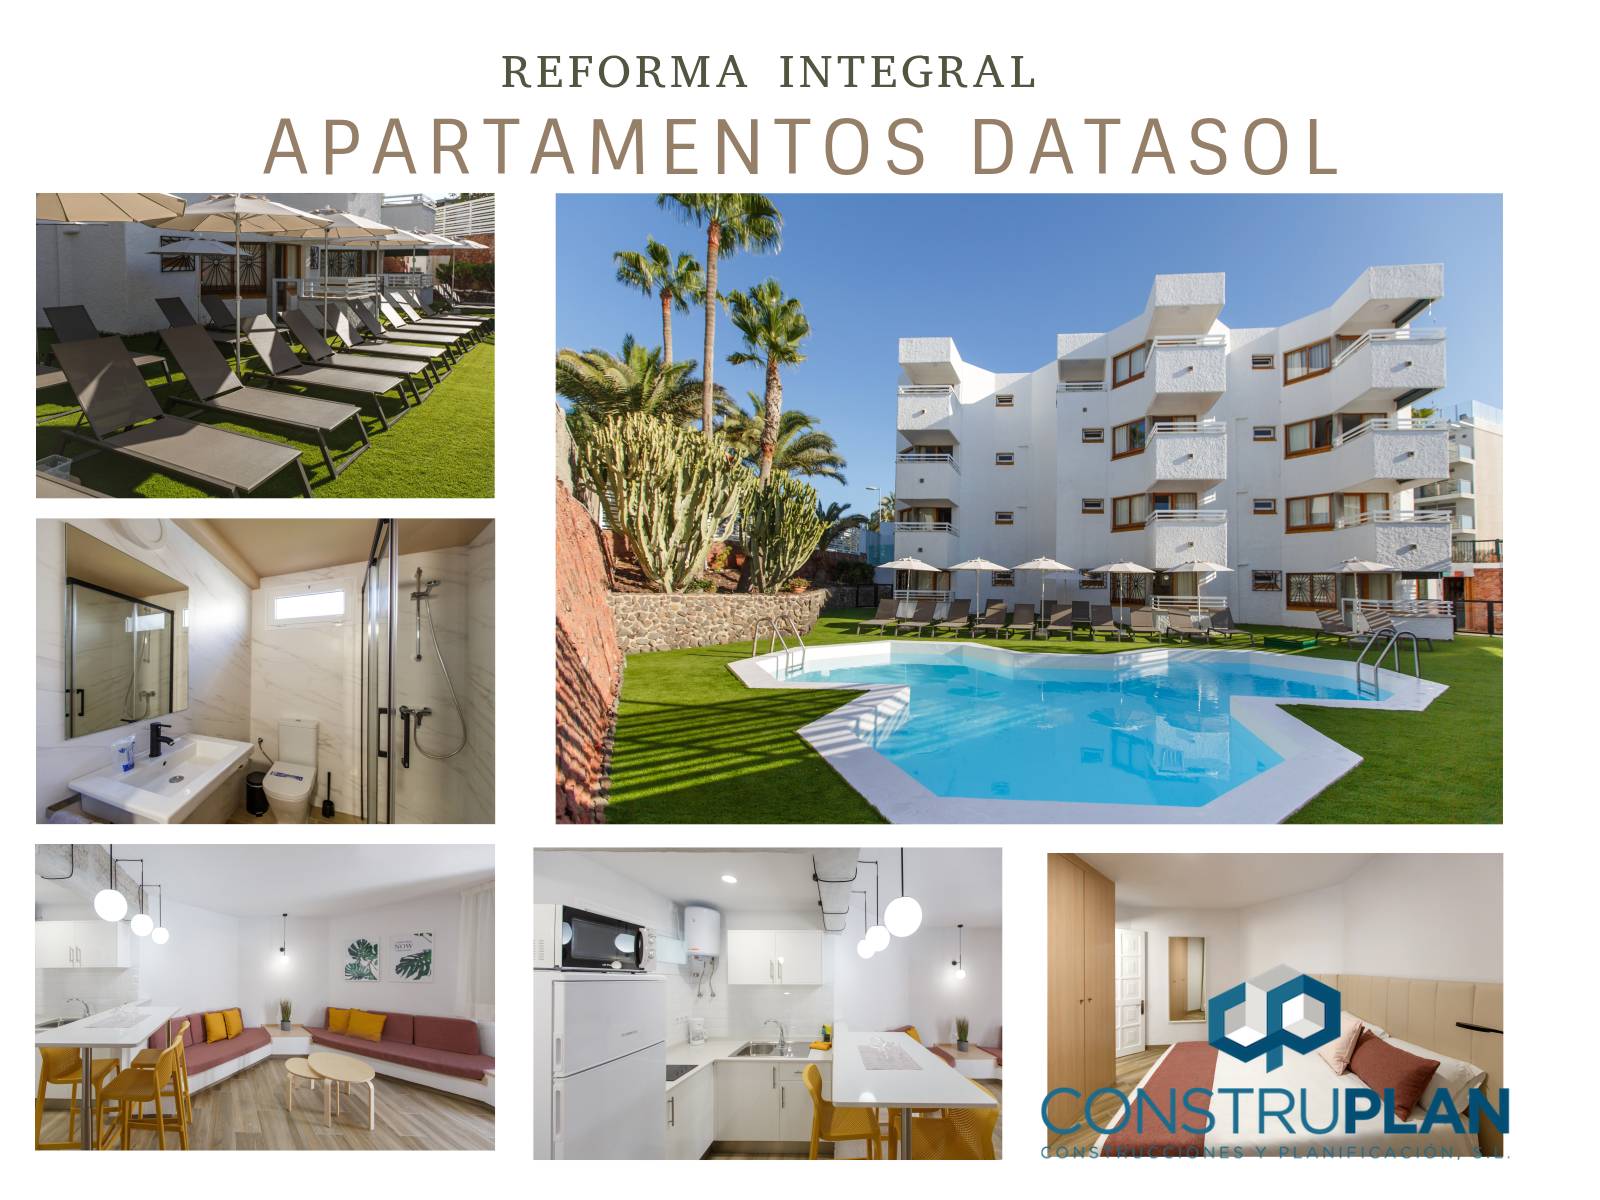 Felicitaciones a nuestro personal por los trabajos realizado en la reforma integral de los Apartamentos Datasol - Playa del Inglés.